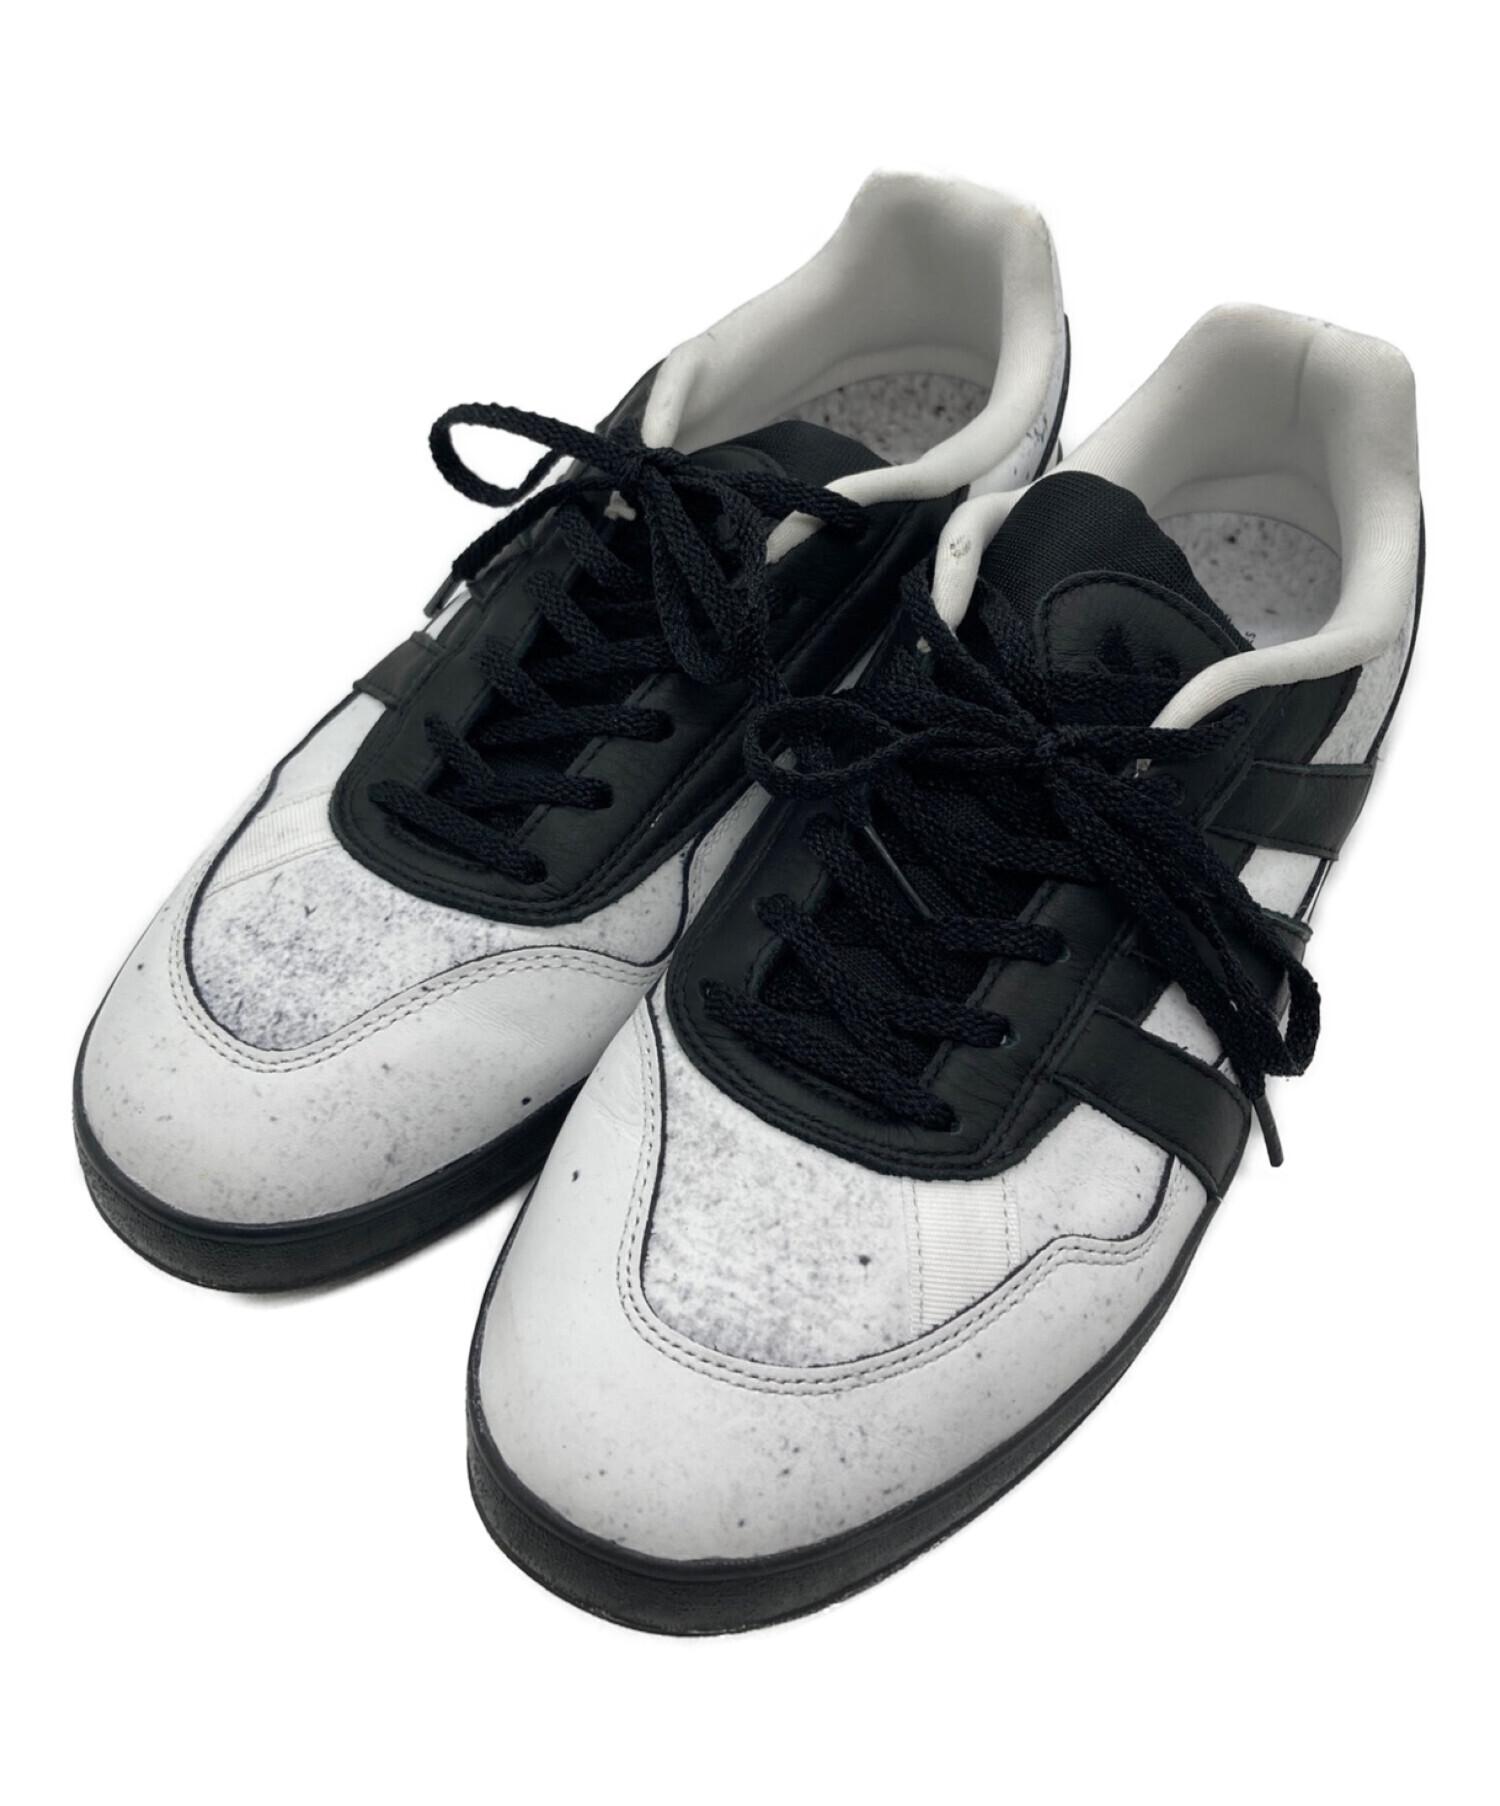 adidas (アディダス) MARK GONZALES (マーク・ゴンザレス) アロハ スーパー ホワイト×ブラック サイズ:28.5cm